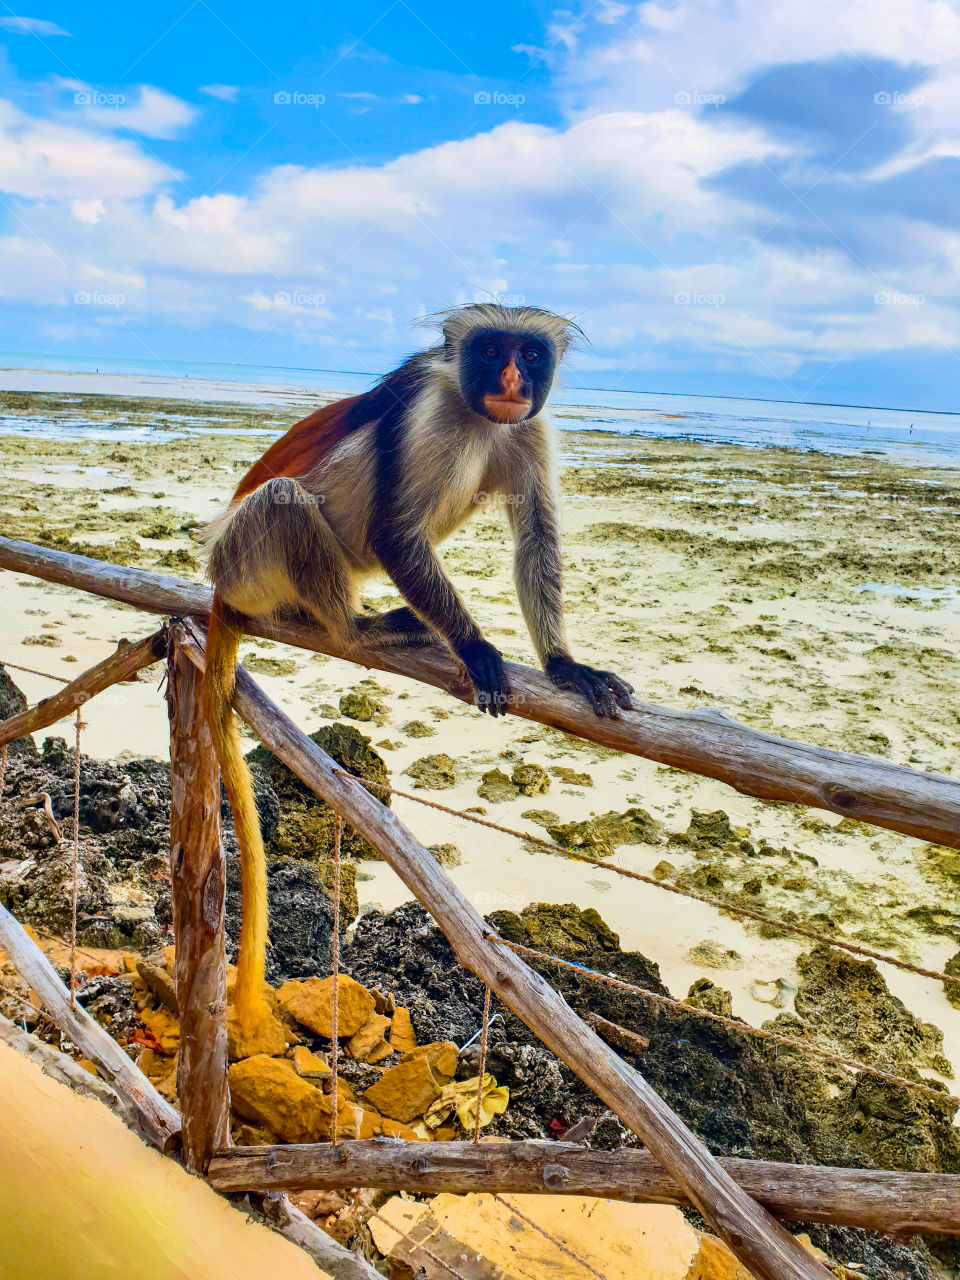 Monkey next to the beach